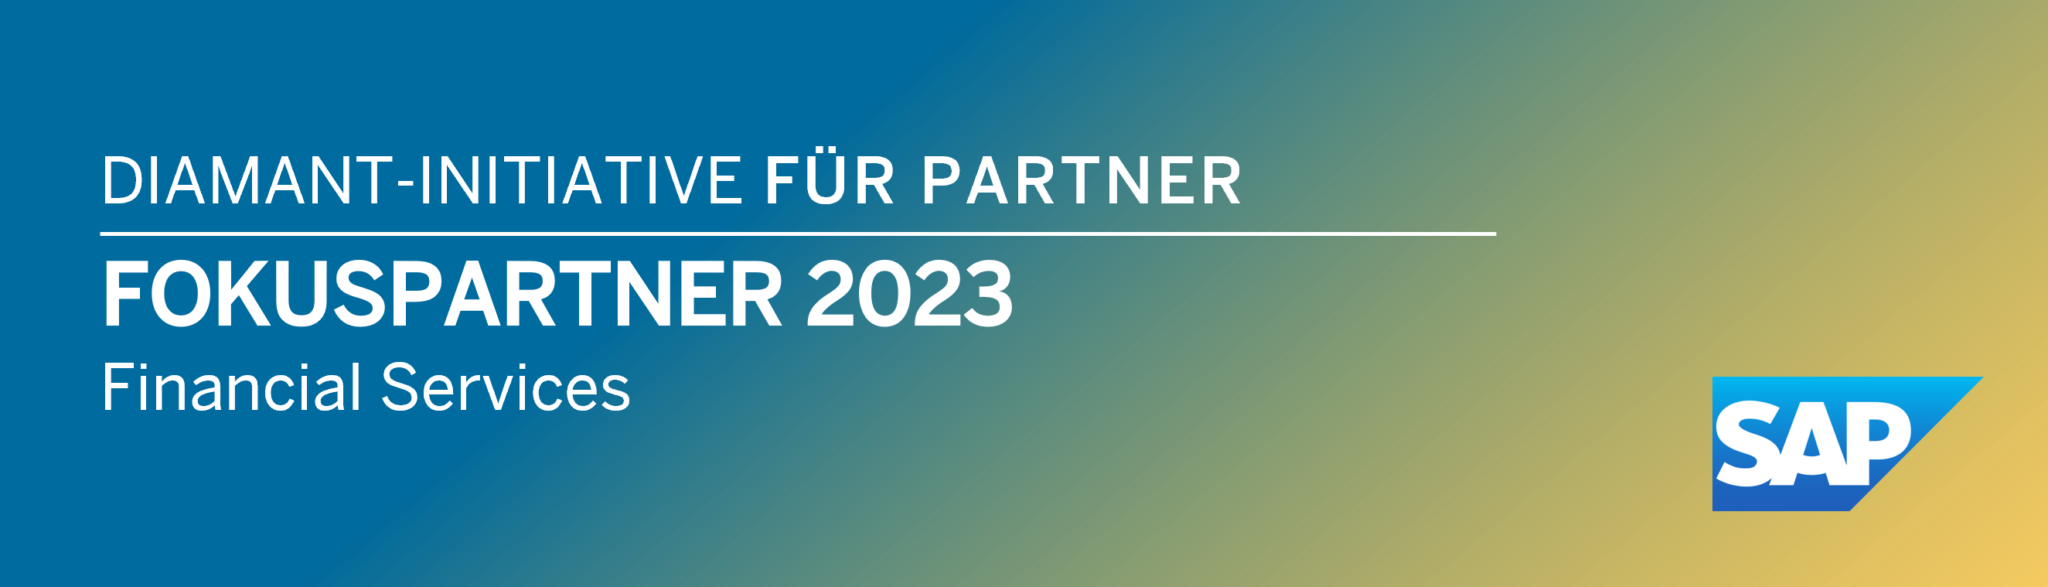 SAP Fokuspartner Financial Services 2023